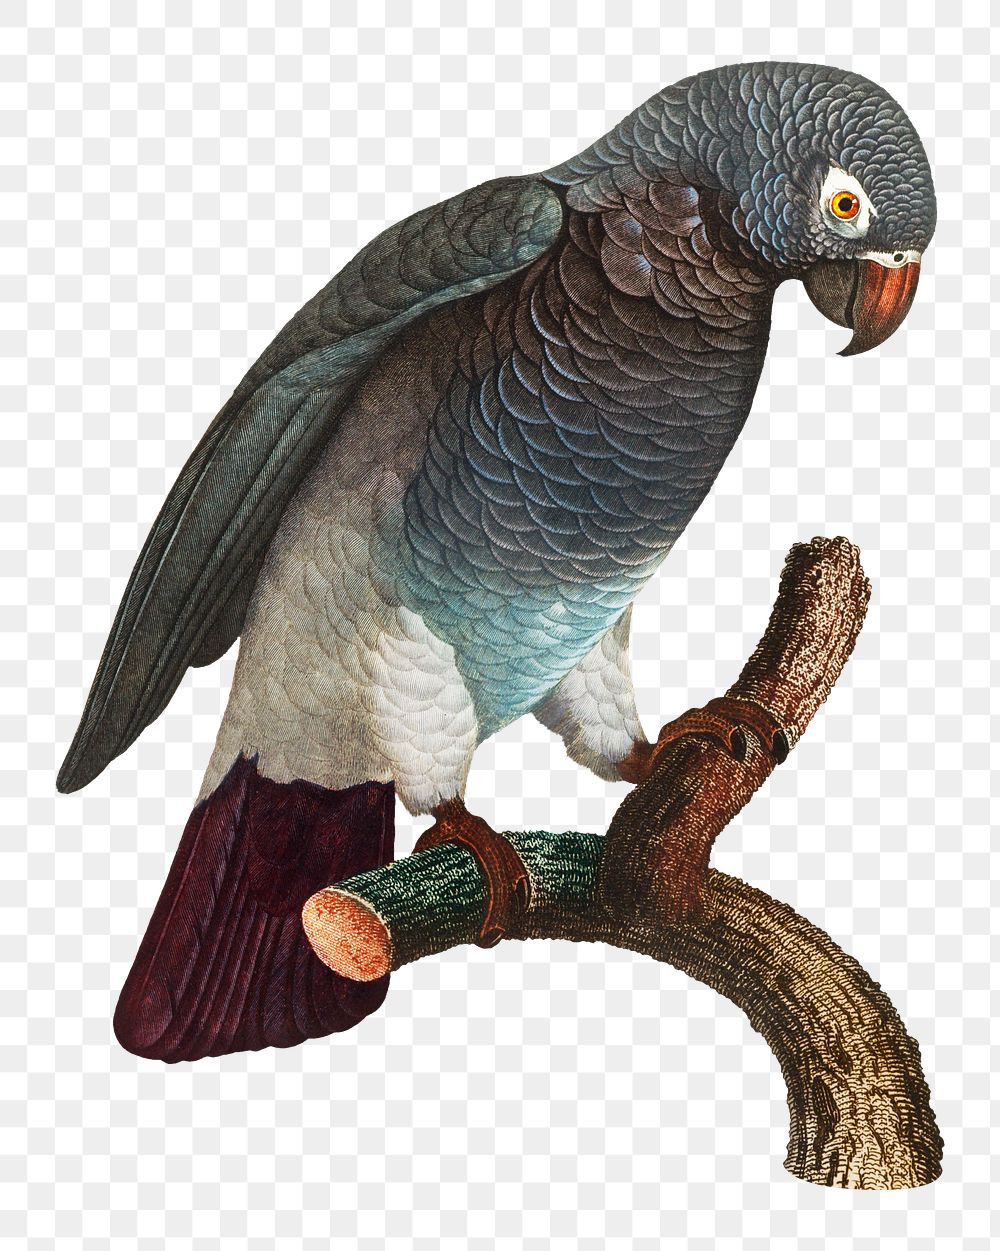 Grey parrot png bird sticker, vintage animal illustration, transparent background